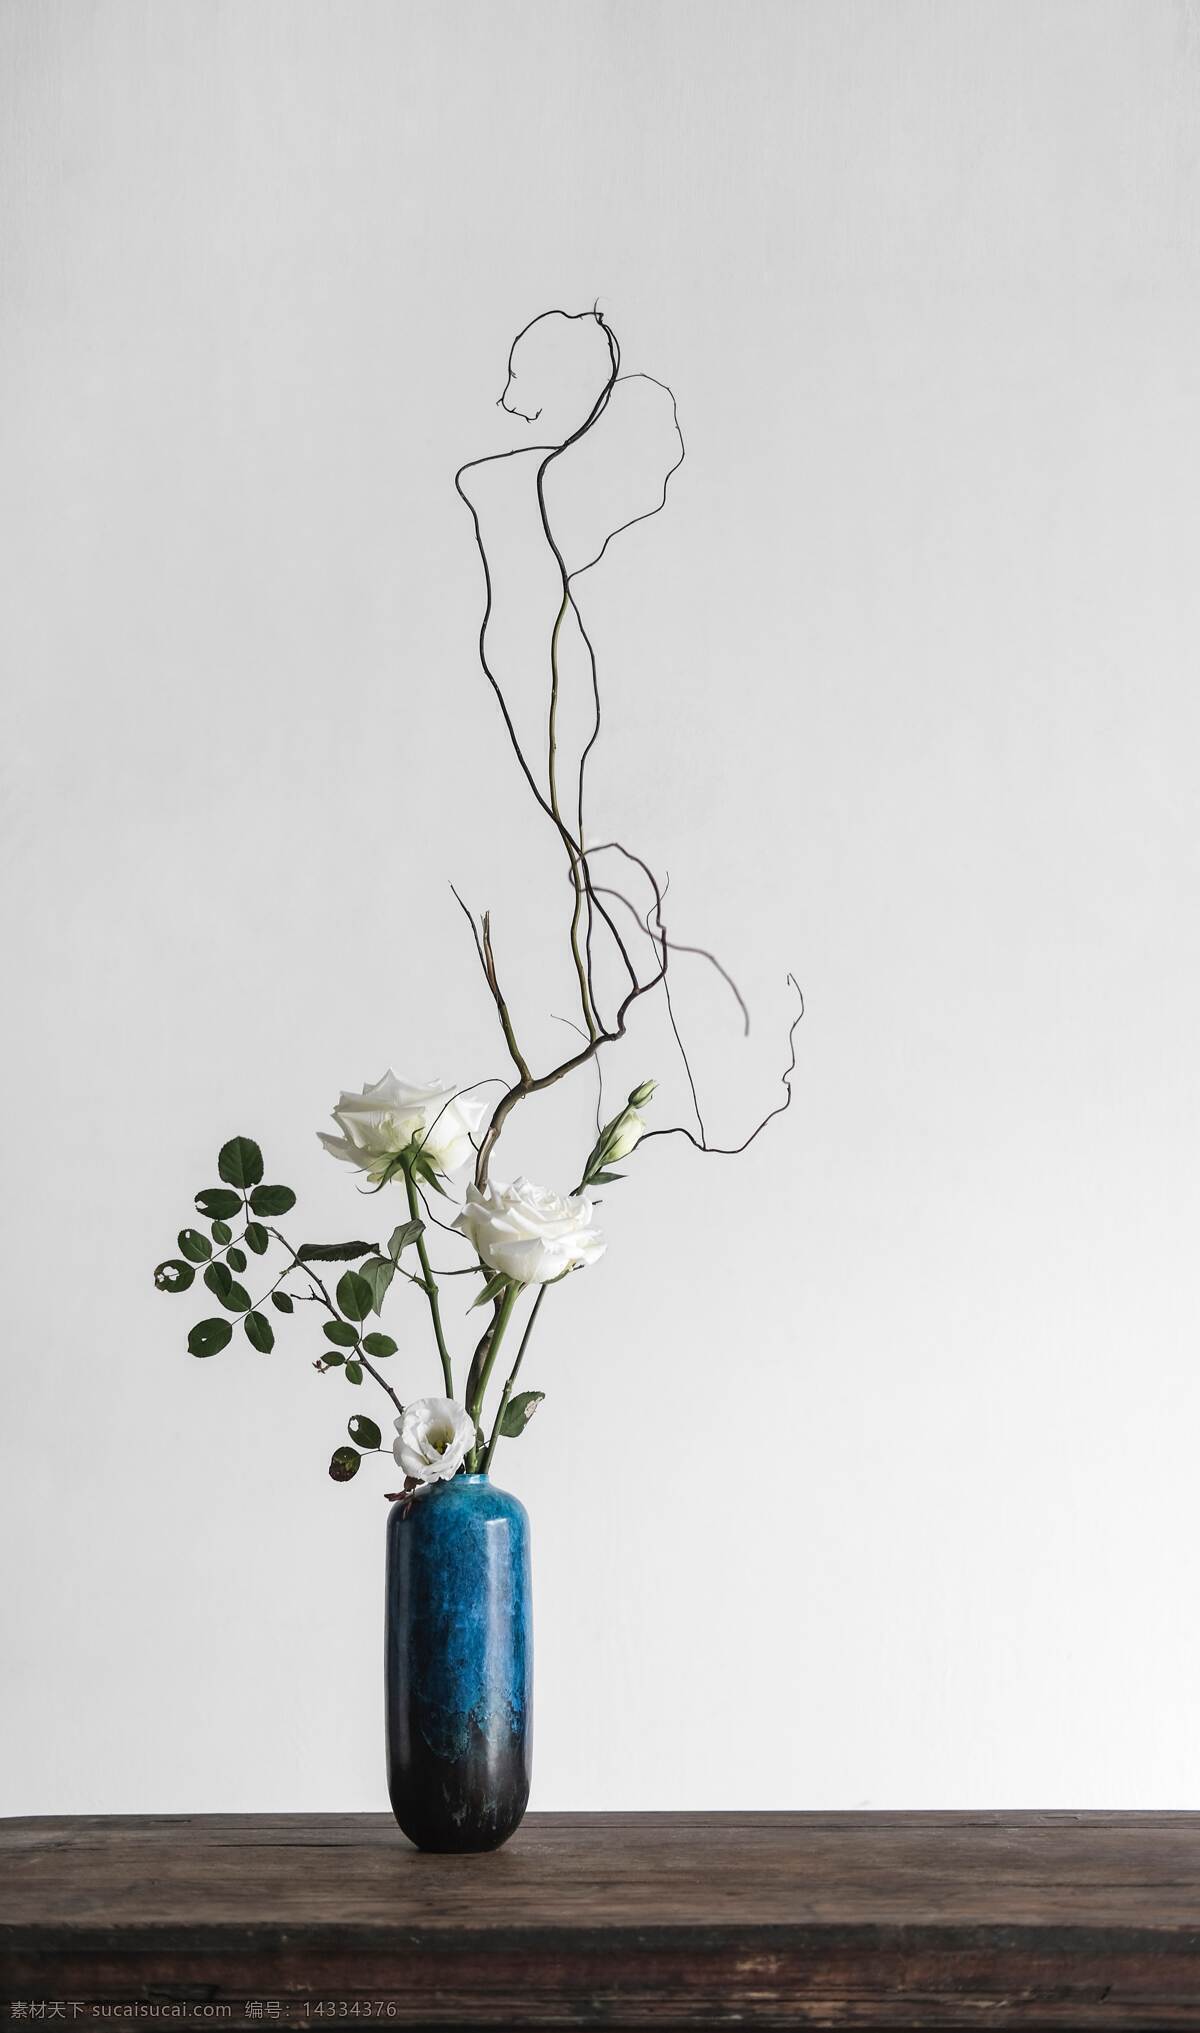 蓝色花瓶 花瓶 插花 绿植 植物 桌面 桌子 木桌 白玫瑰 玫瑰 生活百科 家居生活